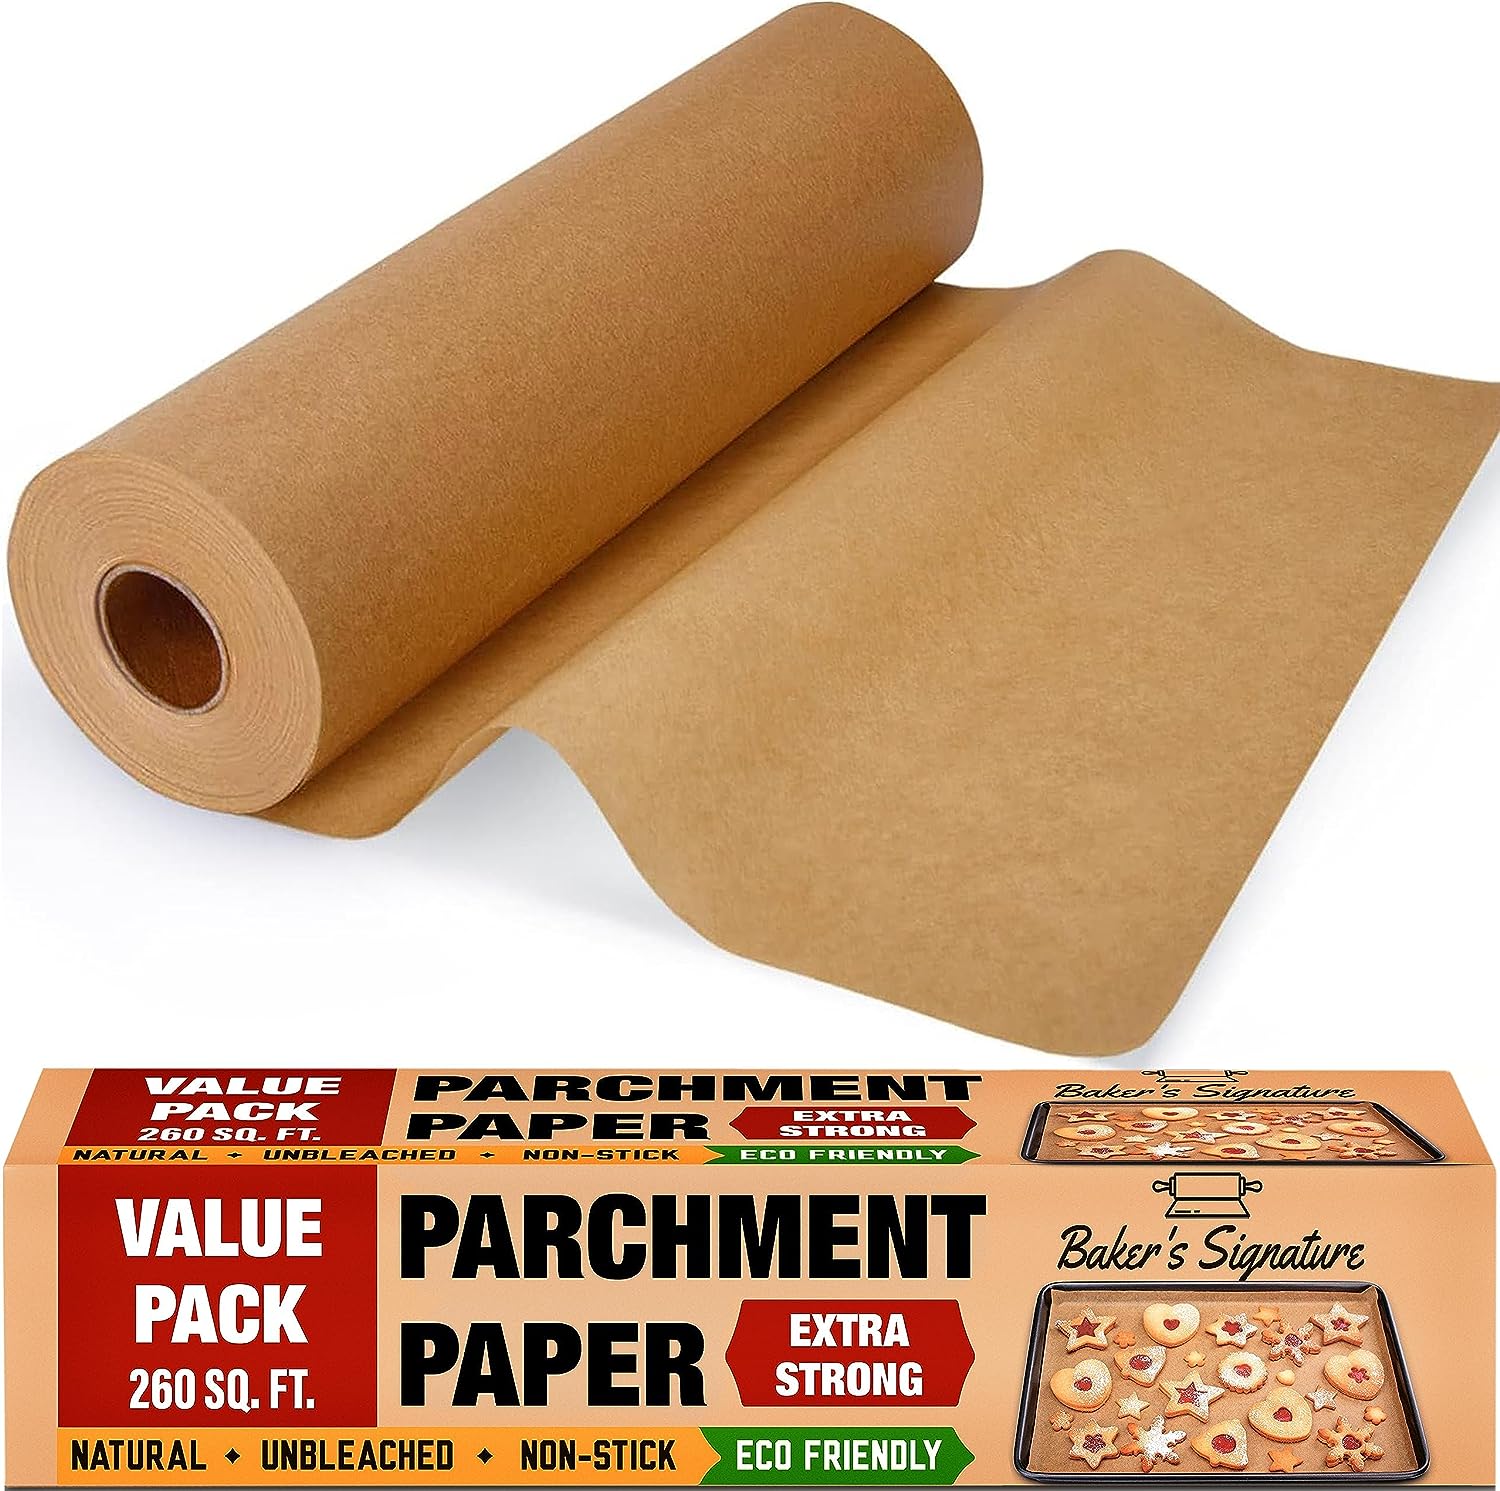 Baking Parchment Paper - Baking Parchment Paper